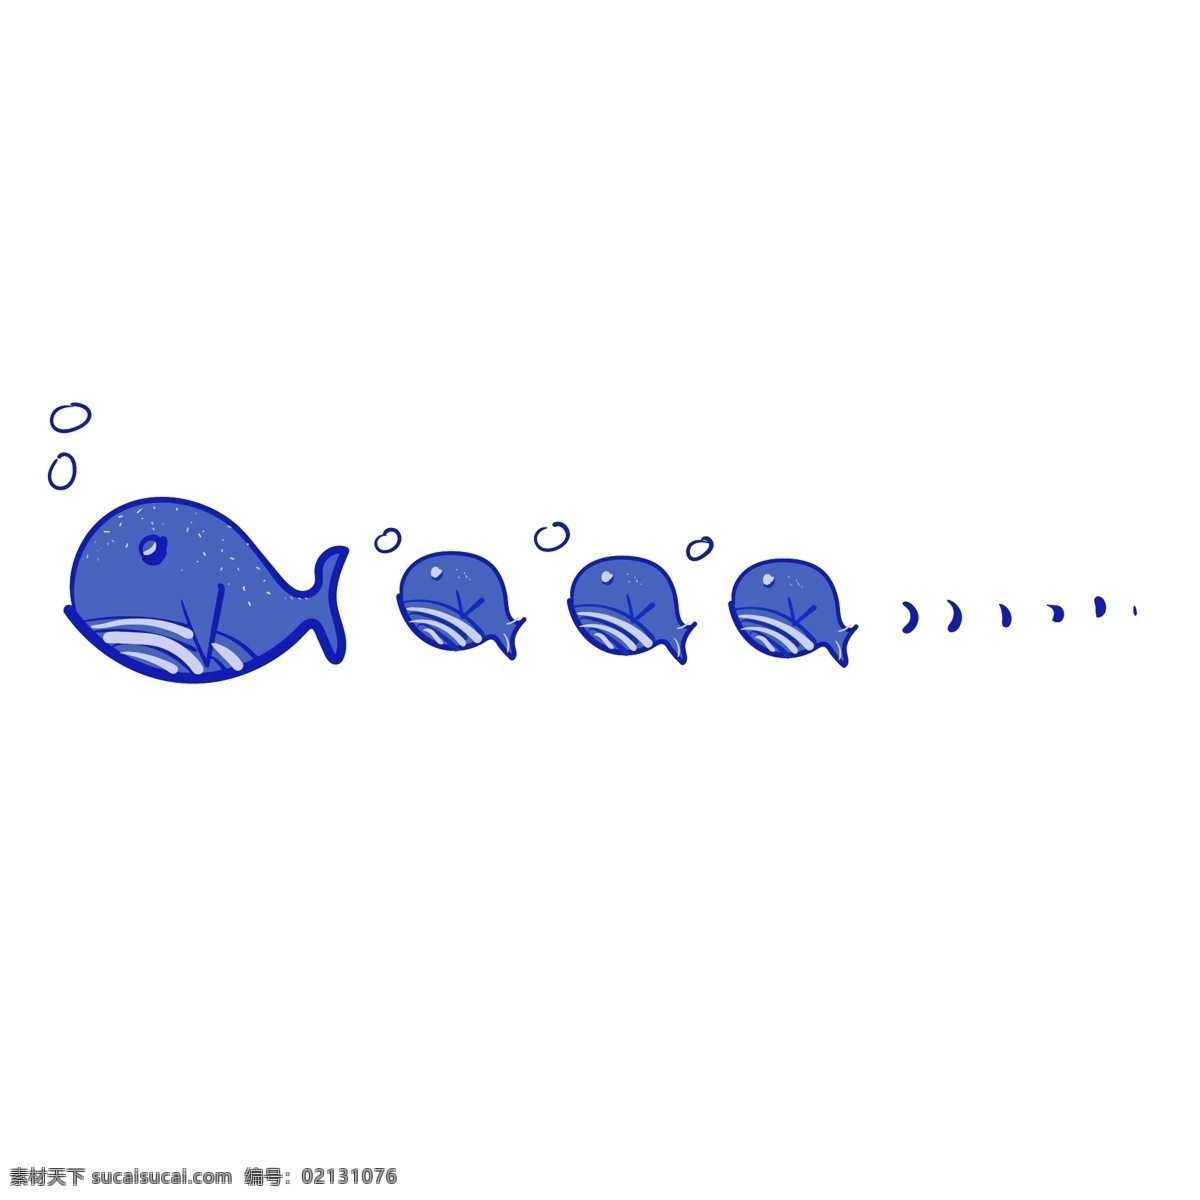 小鱼 分割线 手绘 插画 小鱼分割线 动物分割线 海洋生物 蓝色的分割线 漂亮的分割线 分割线插画